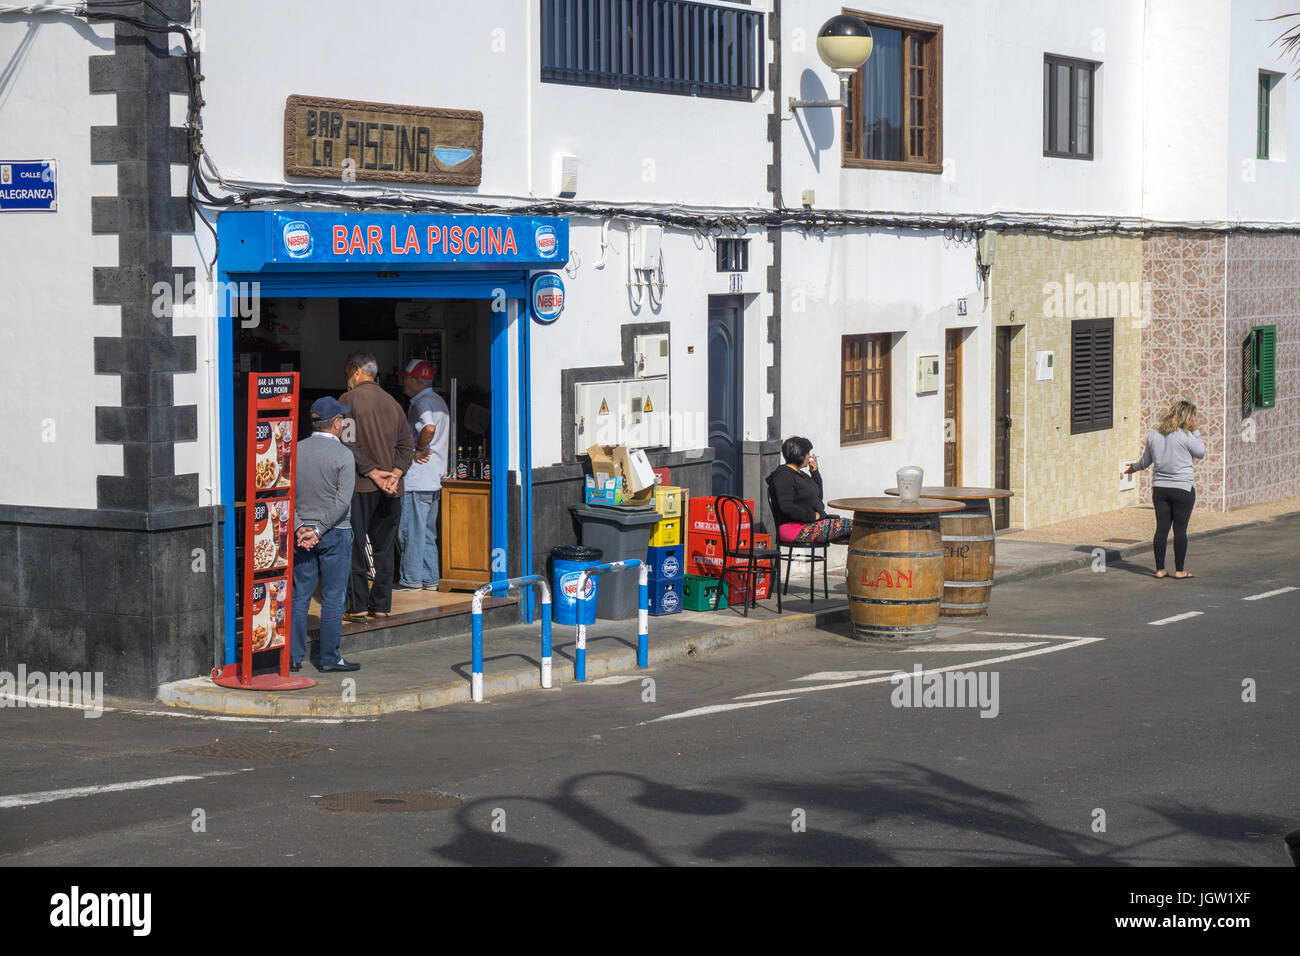 Los lugareños en el bar de la piscina, Punta Mujeres, pueblo pesquero al norte de Lanzarote, Islas Canarias, España, Europa Foto de stock